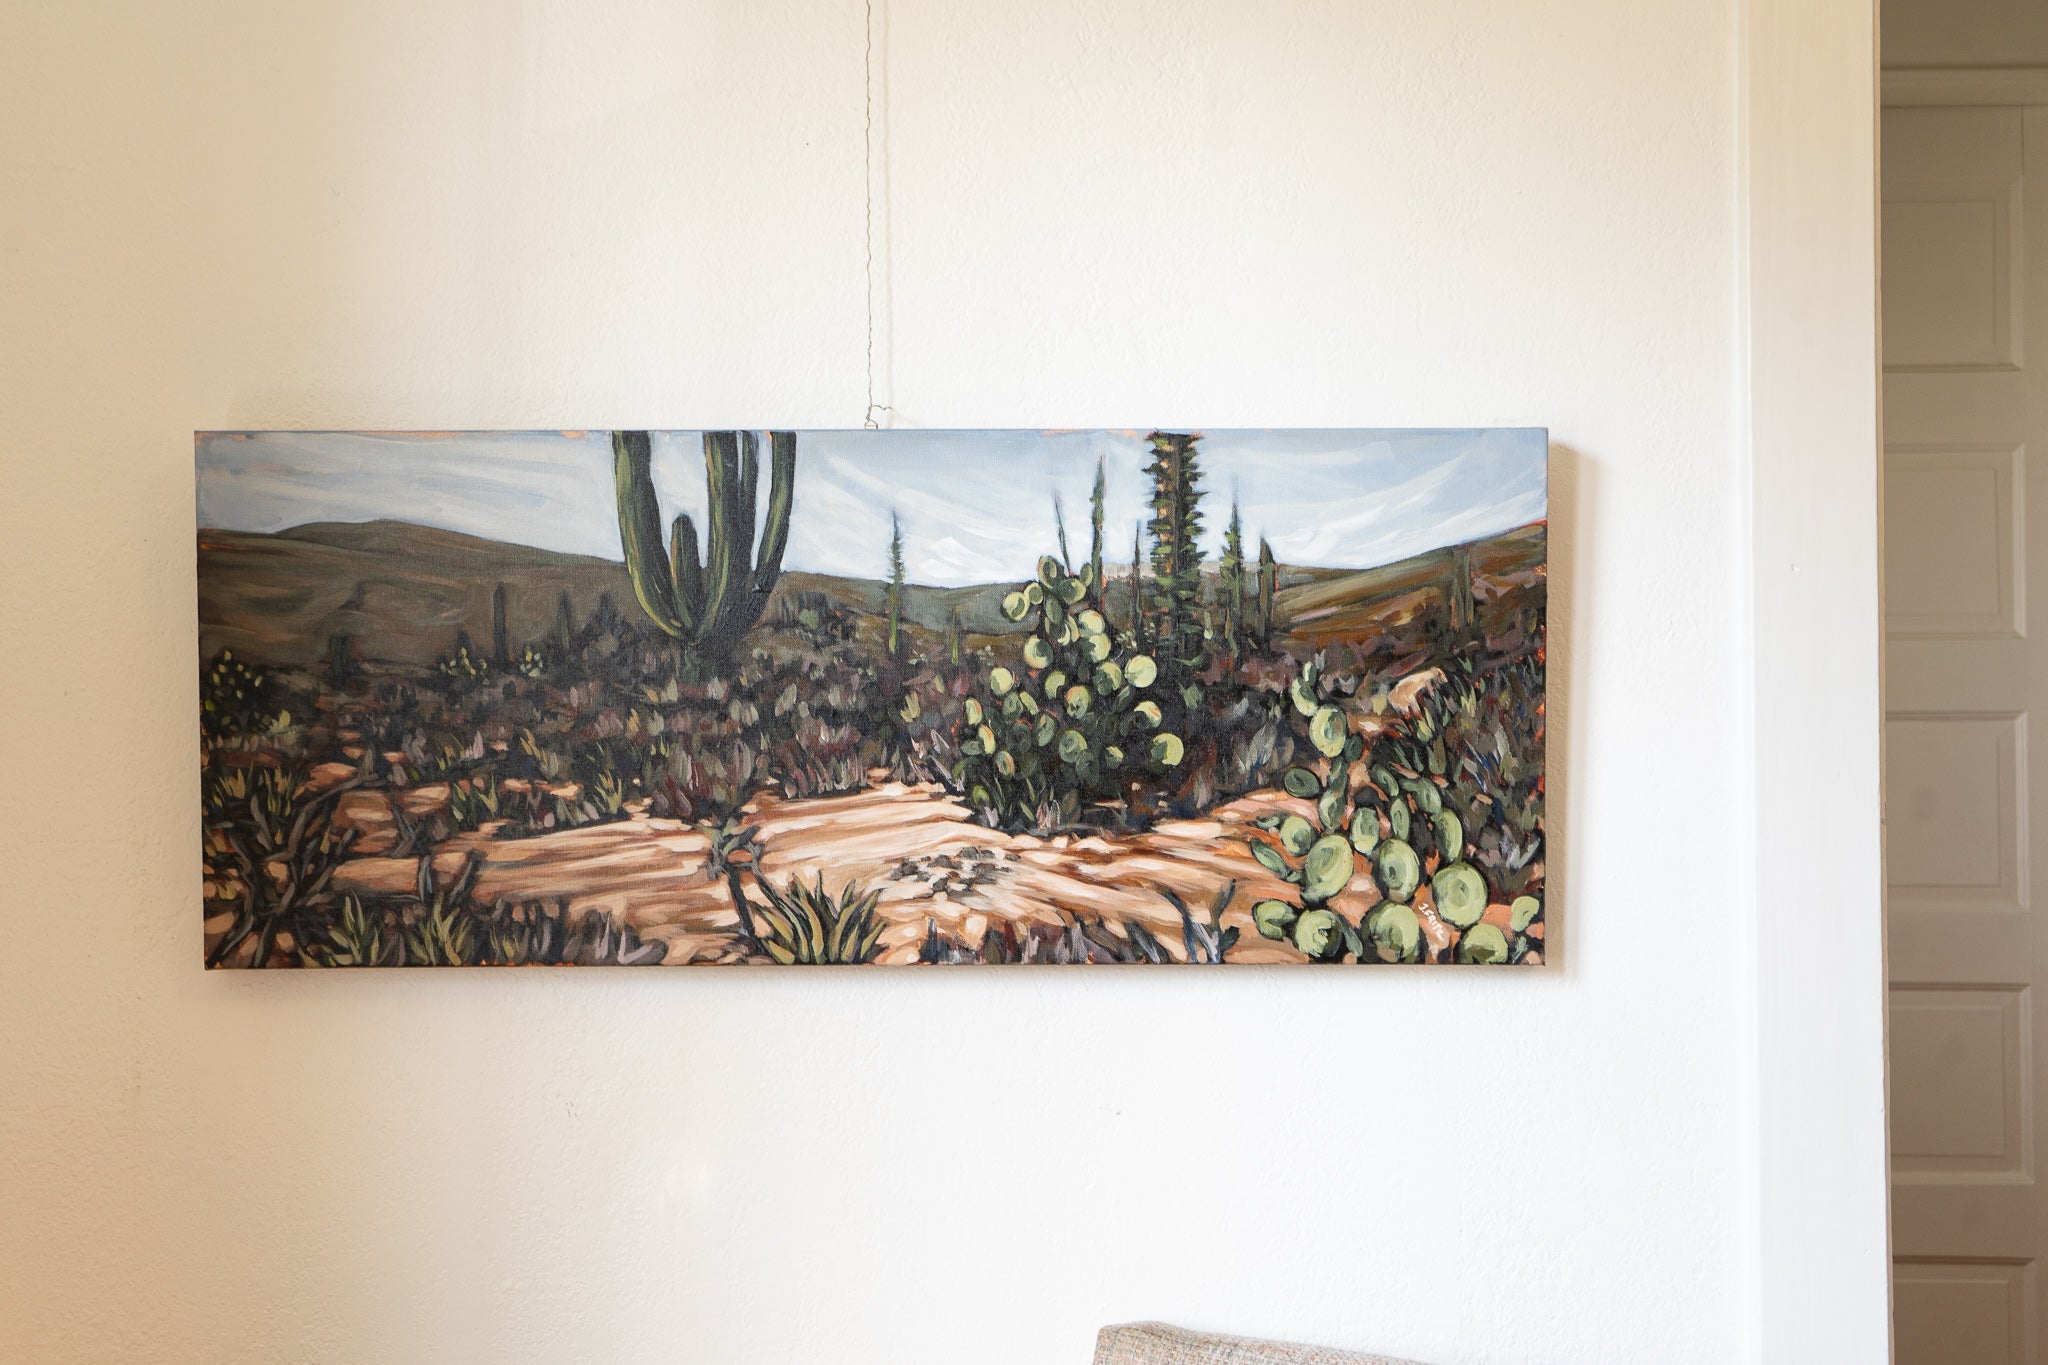 The Desert Aesthetic: An Artist's Journey through Baja California